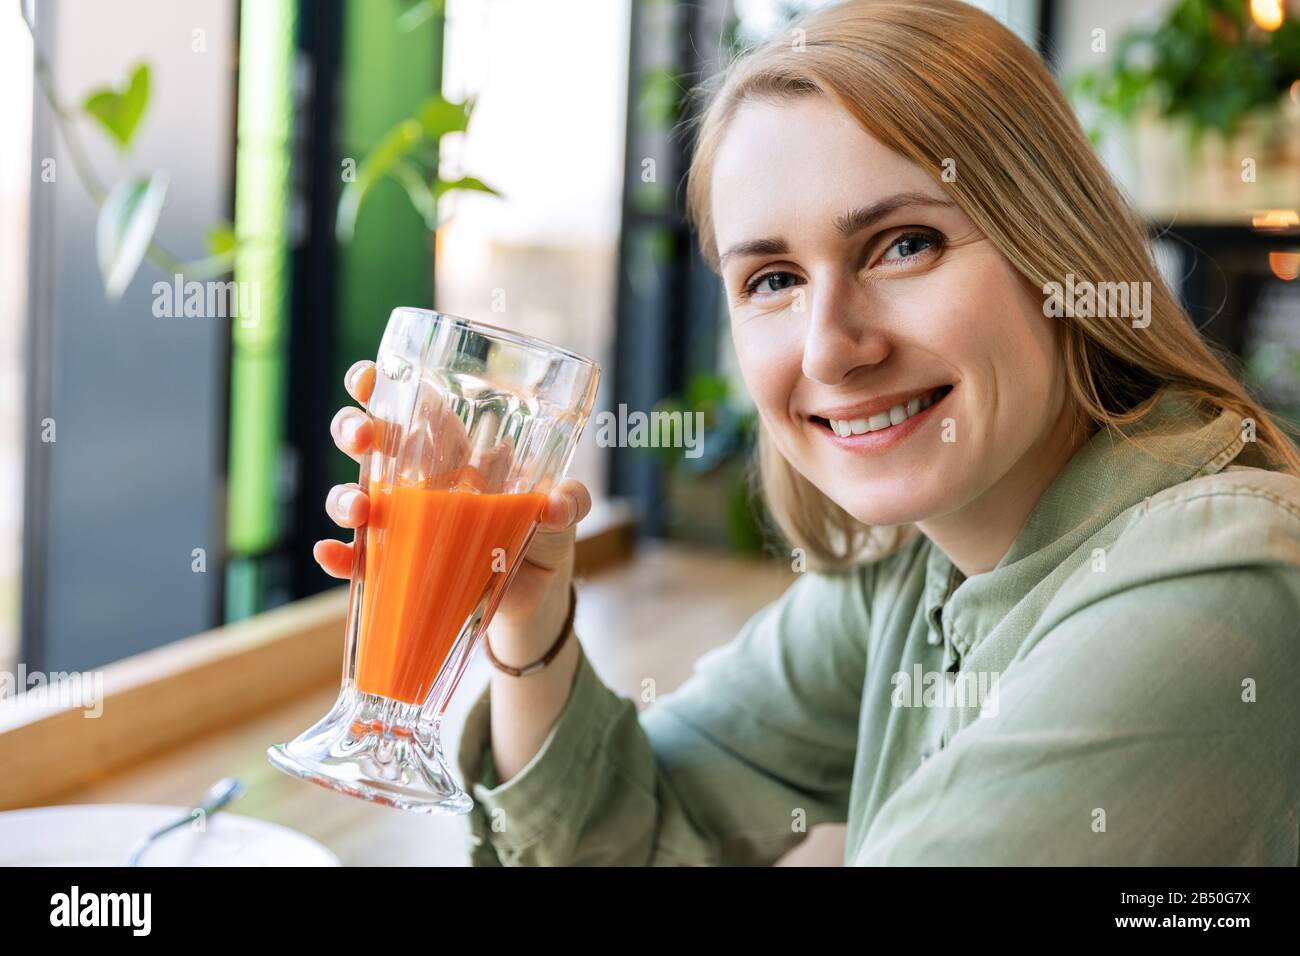 sonriente mujer de estilo de vida saludable bebiendo un vaso de jugo de zanahoria fresco Foto de stock